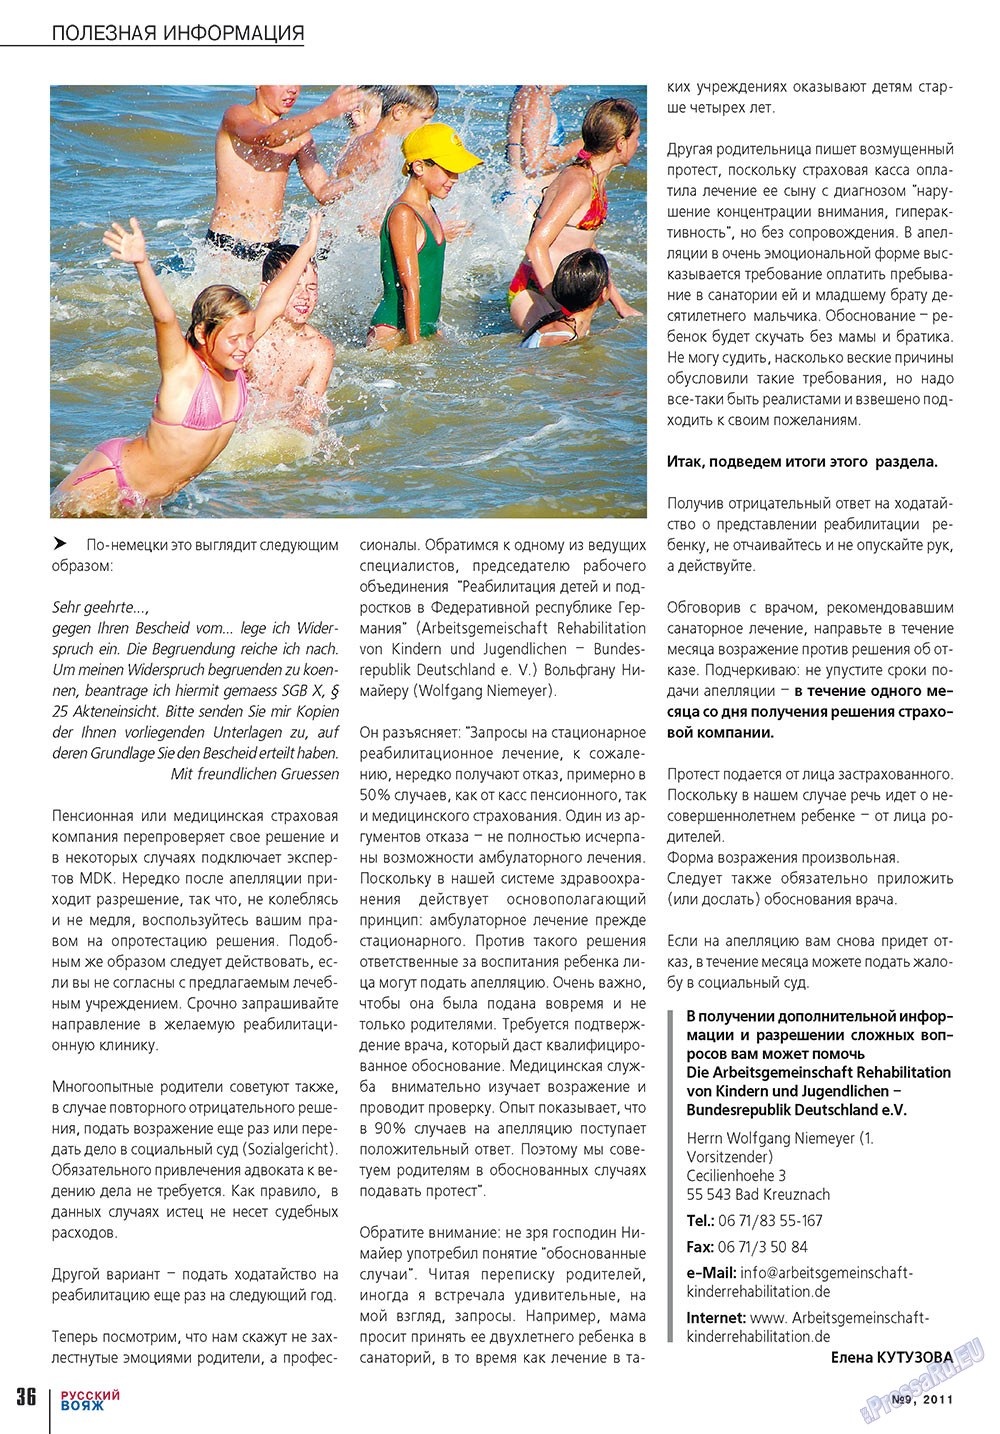 Русский вояж (журнал). 2011 год, номер 9, стр. 36